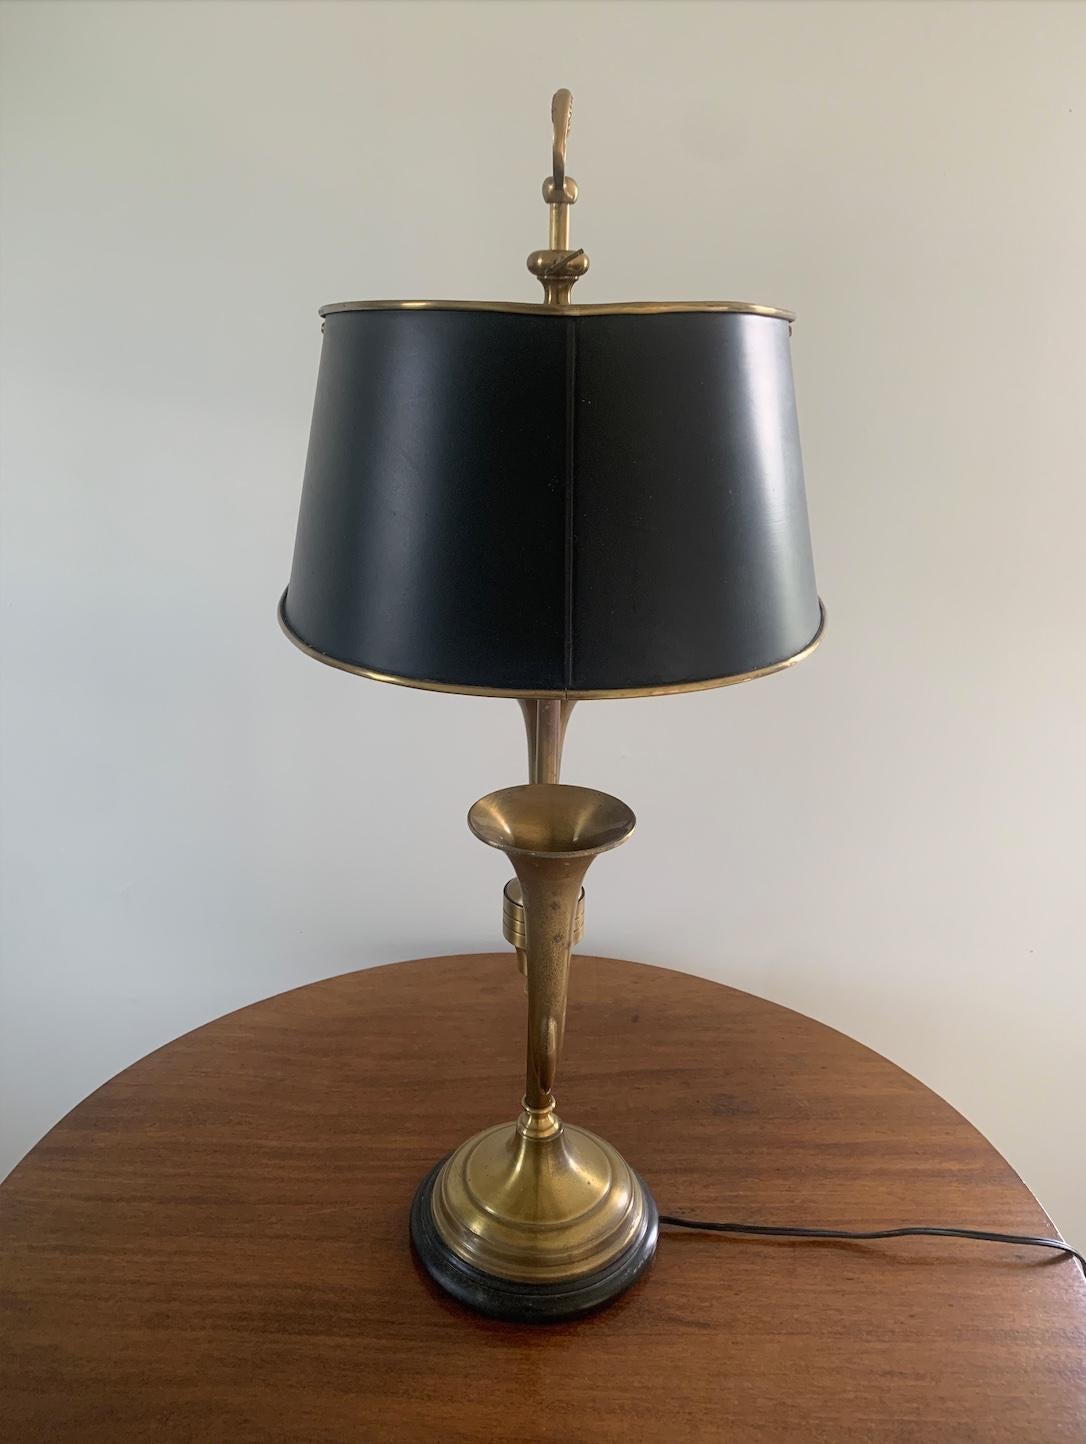 Magnifique lampe bouillotte en corne de laiton avec abat-jour en tole noir

États-Unis d'Amérique, milieu du XXe siècle

Mesures : 16